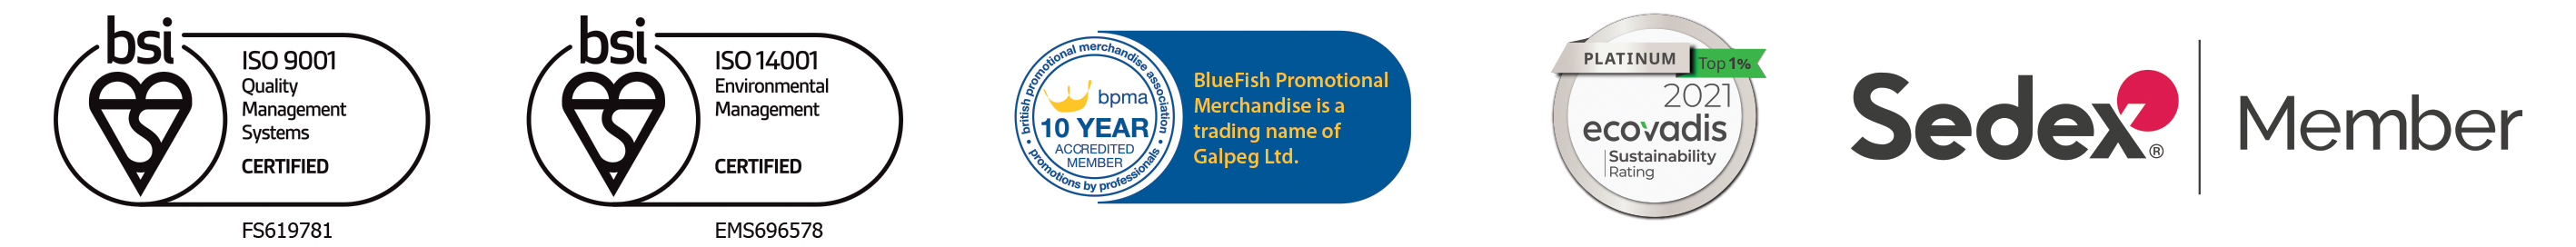 BlueFish Promotional Merchandise Accreditation